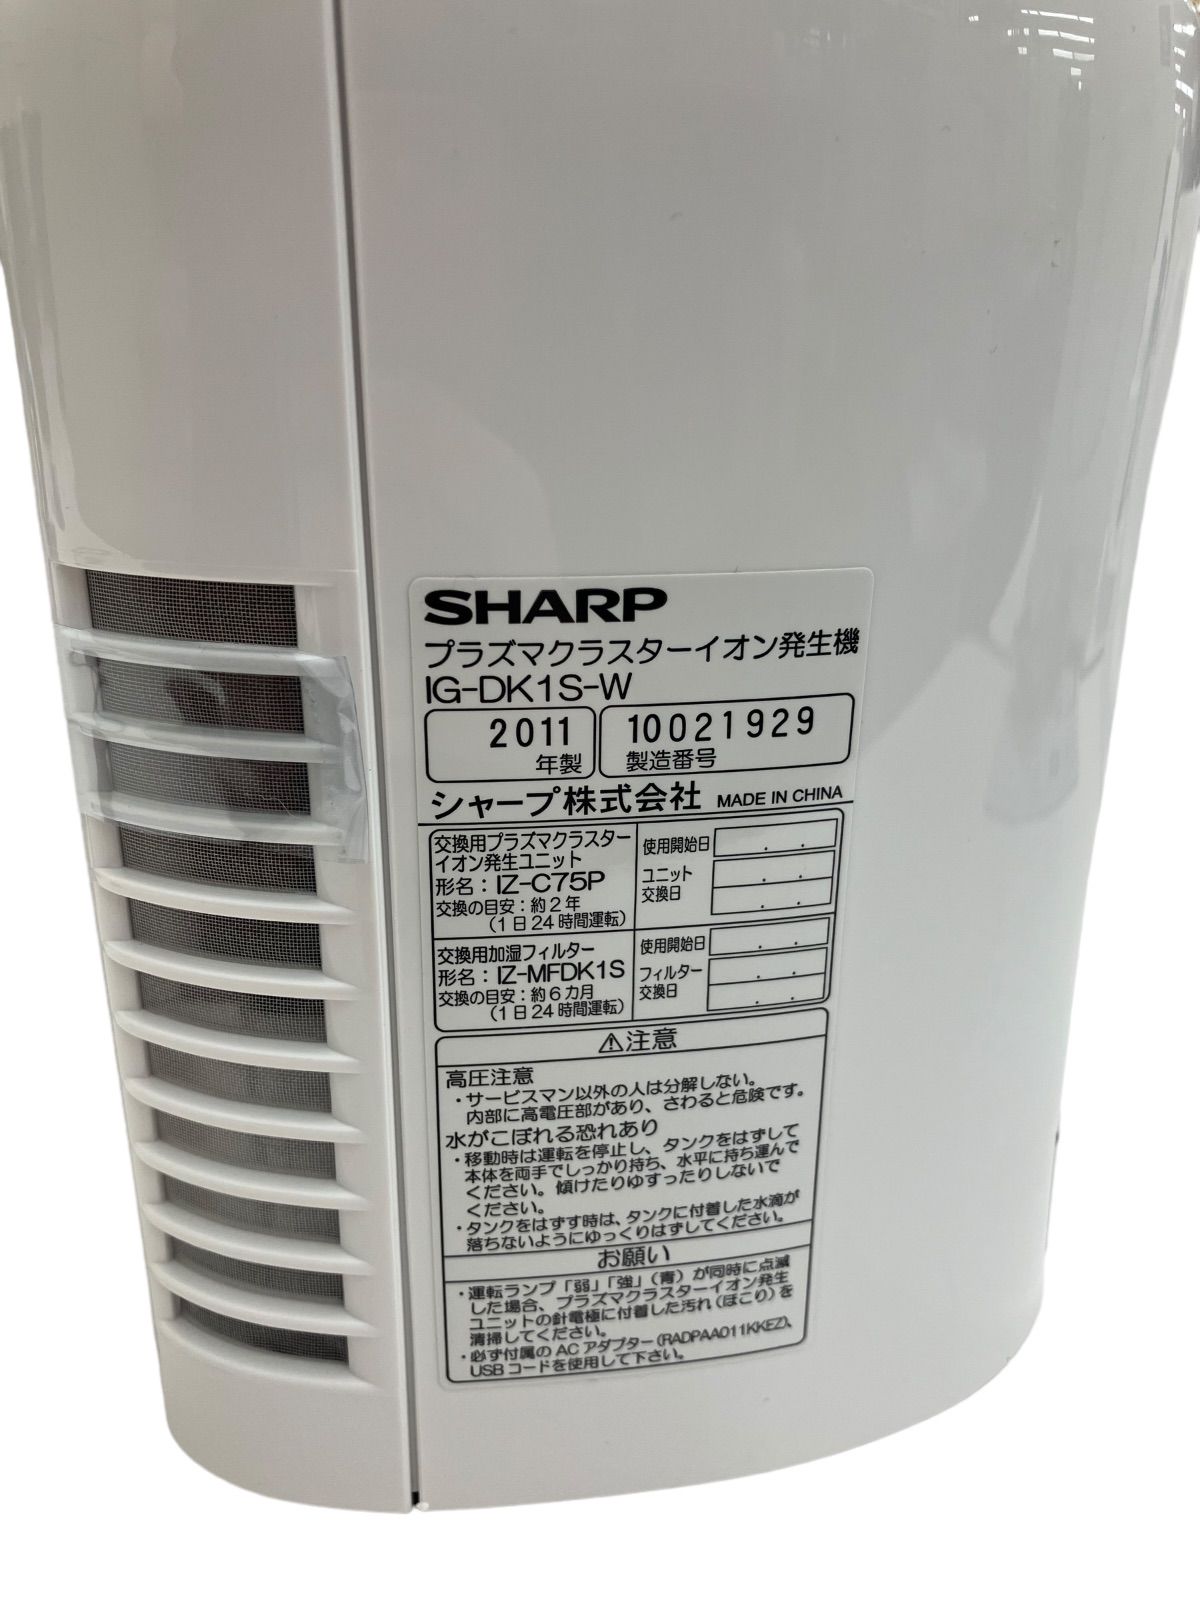 SHARP IG-DK1S-W シャープ プラズマクラスターイオン発生機 ☆未使用品